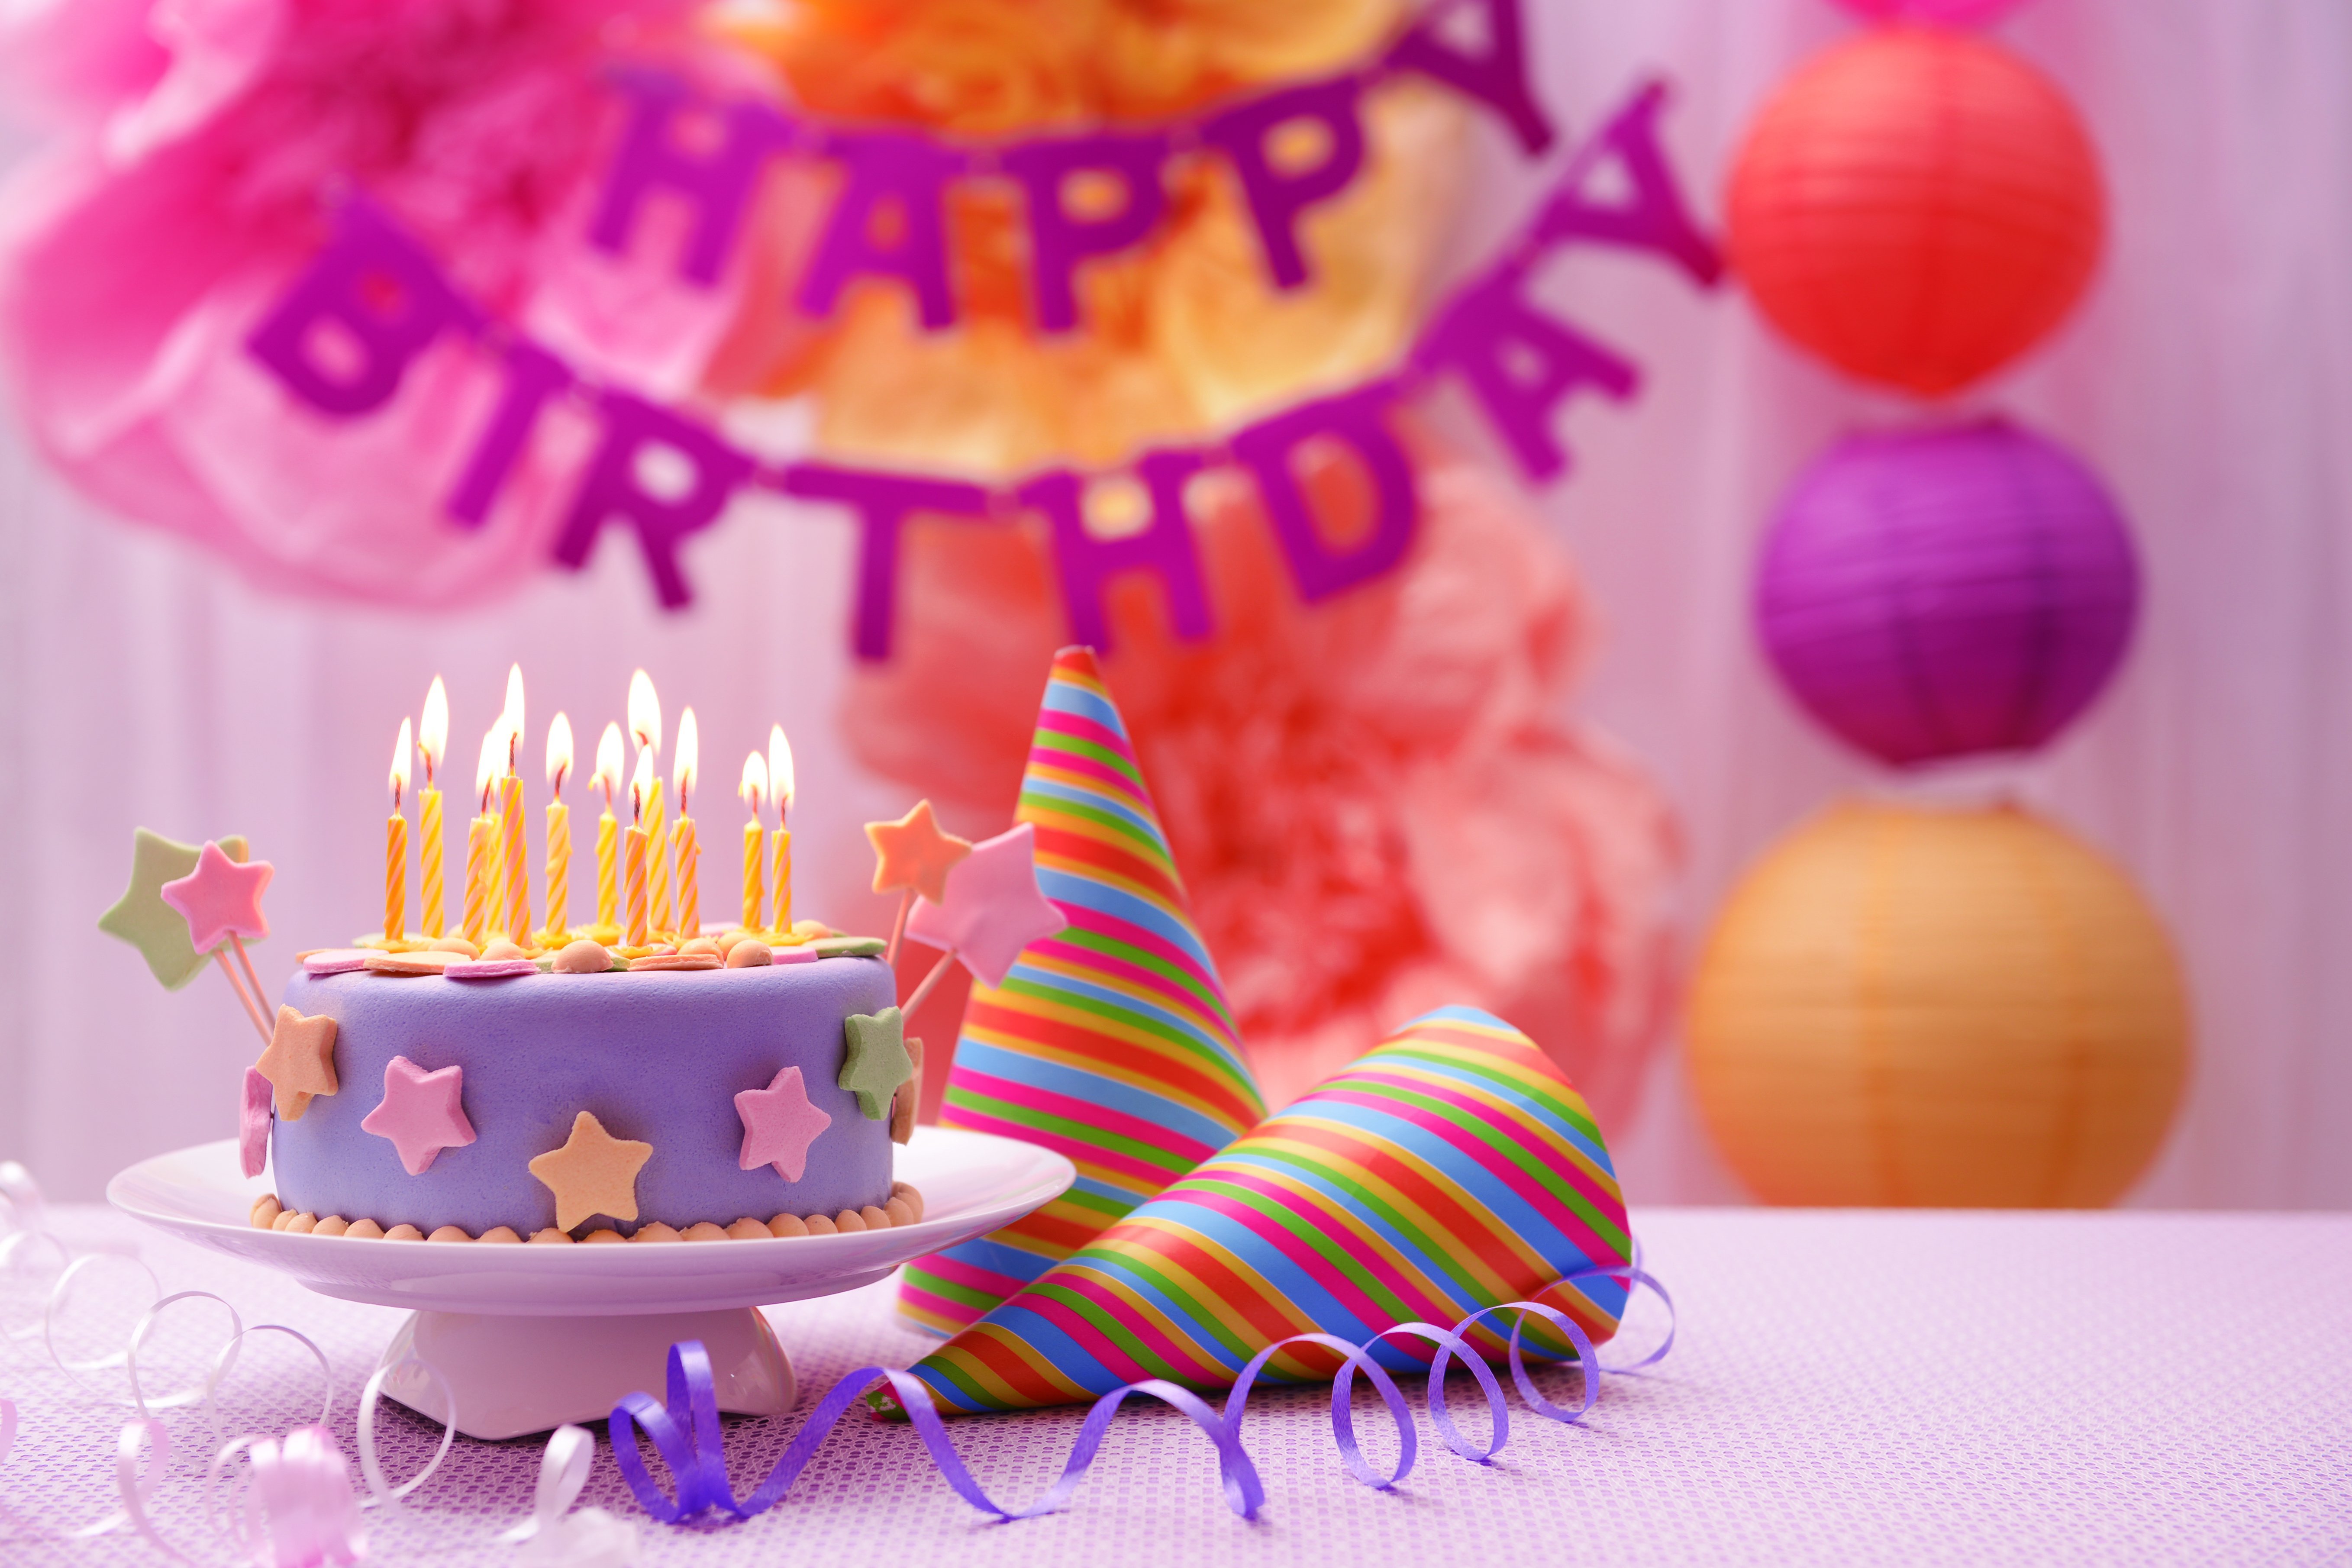 День рождения полностью. Тортик с днем рождения. Открытка с днём рождения торт. С днем рождения торт и цветы. Счастливого дня рождения тортик.